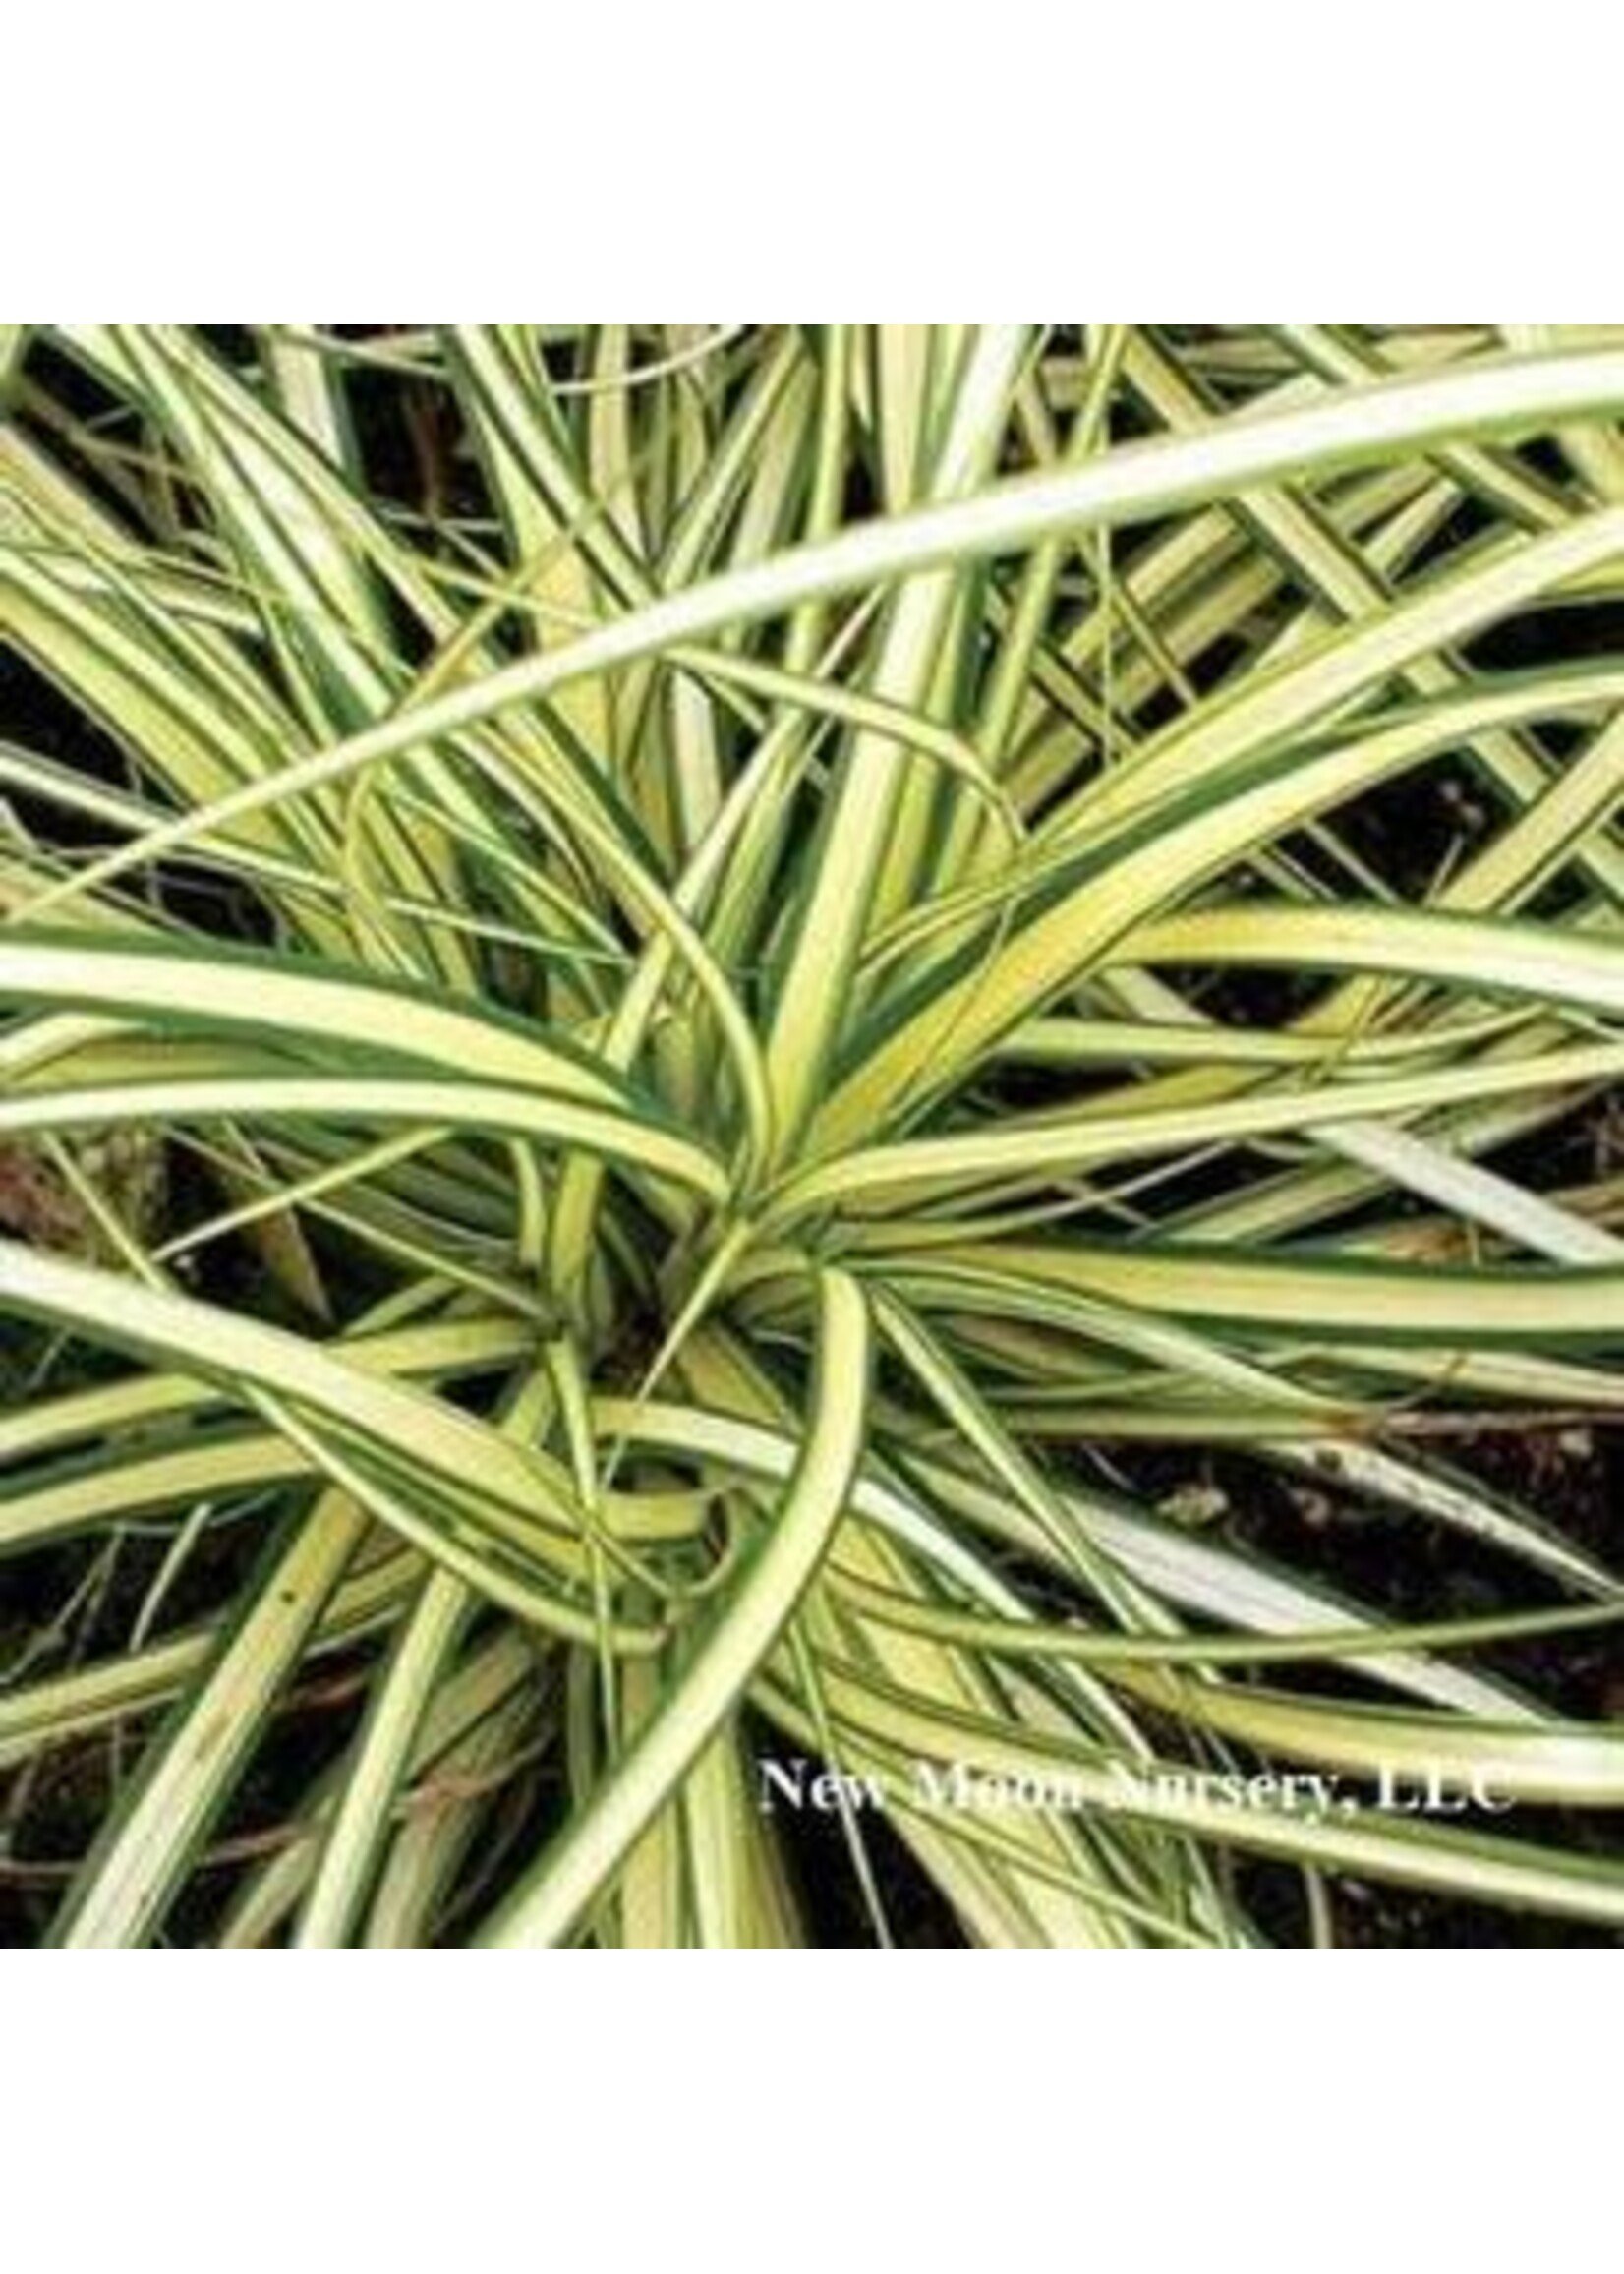 Carex osh. Evergold Grass - Ornamental Evergold Sedge, #1